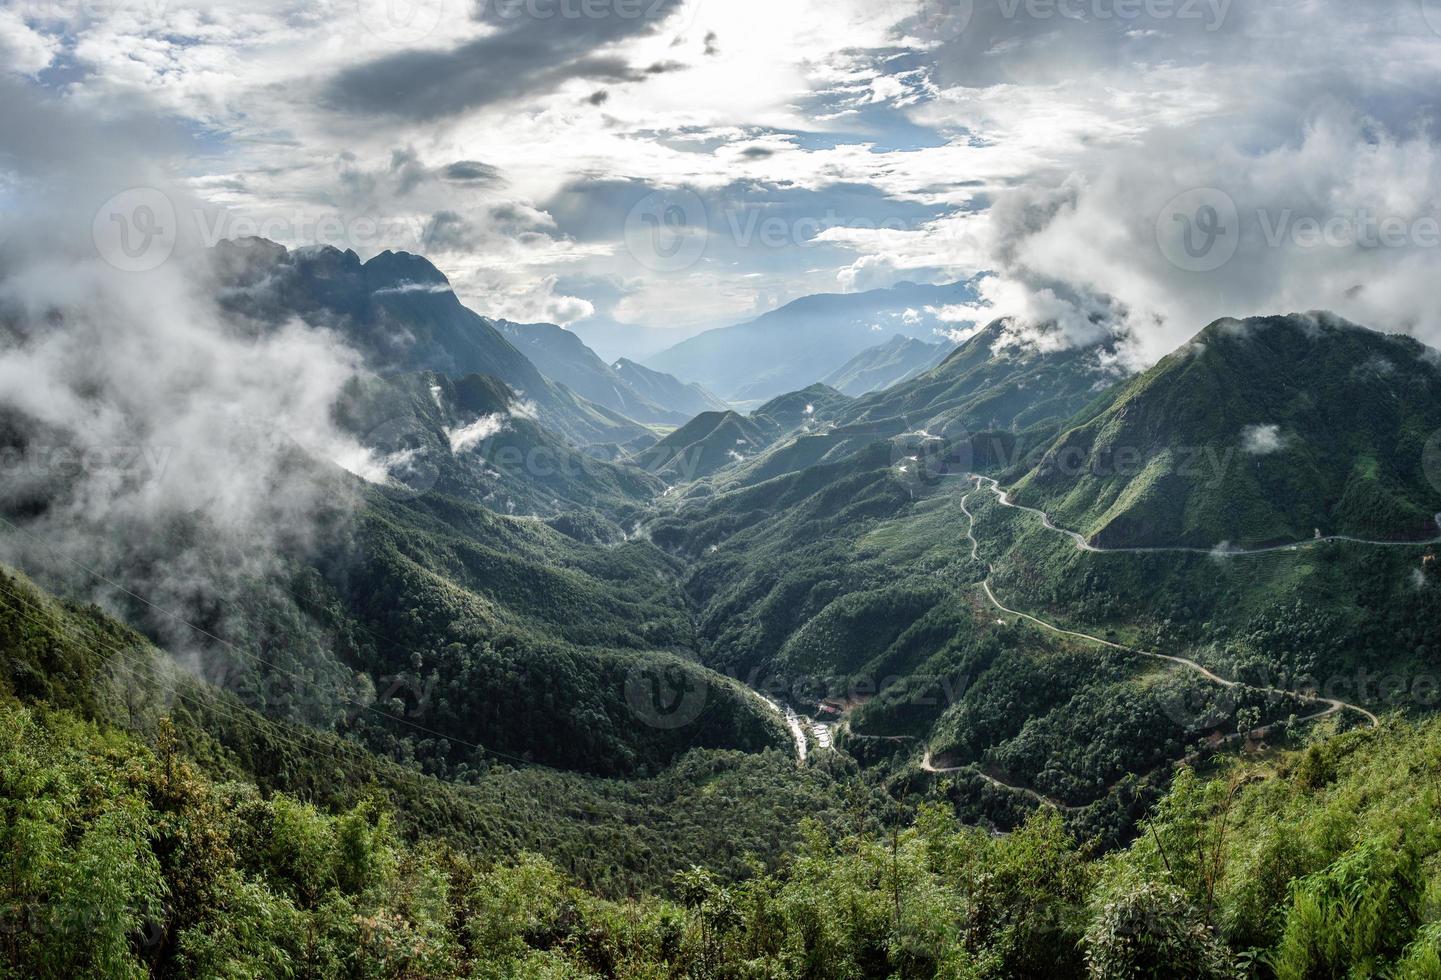 cenário de bonde ton pass ou o quy ho pass é uma passagem de montanha sinuosa no vale com neblina em sapa, noroeste do vietnã foto